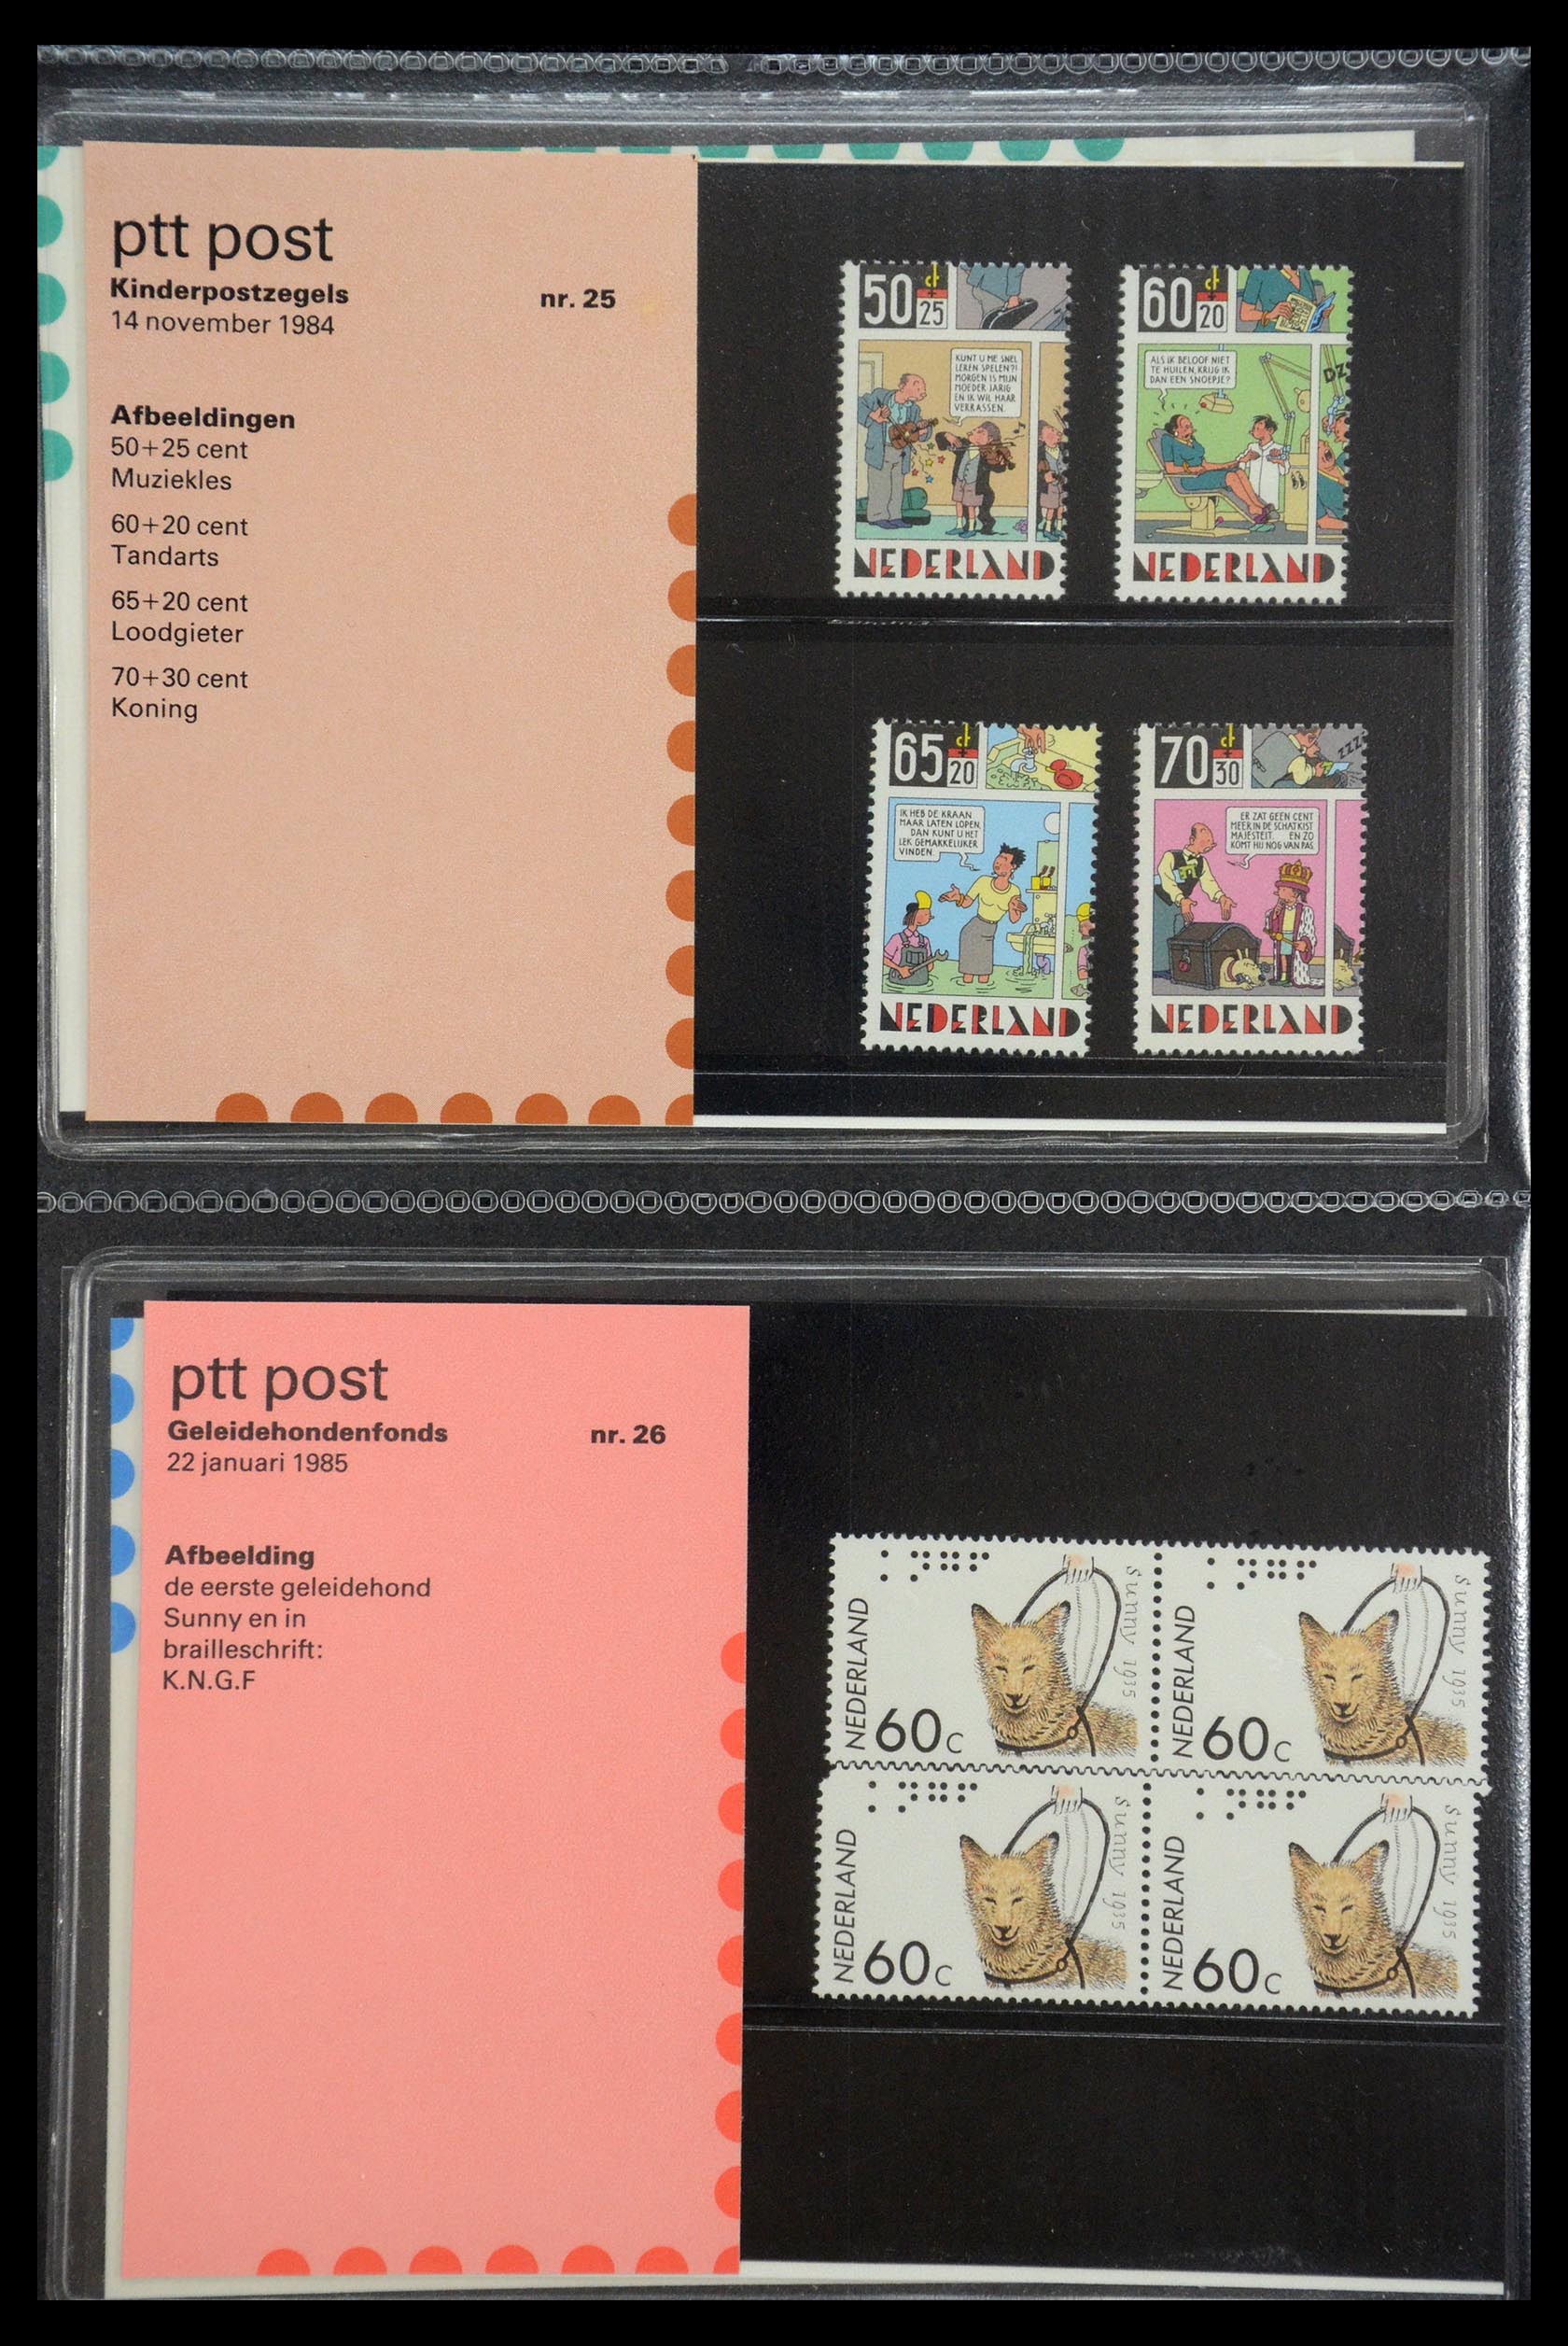 35187 013 - Stamp Collection 35187 Netherlands PTT presentation packs 1982-2019!